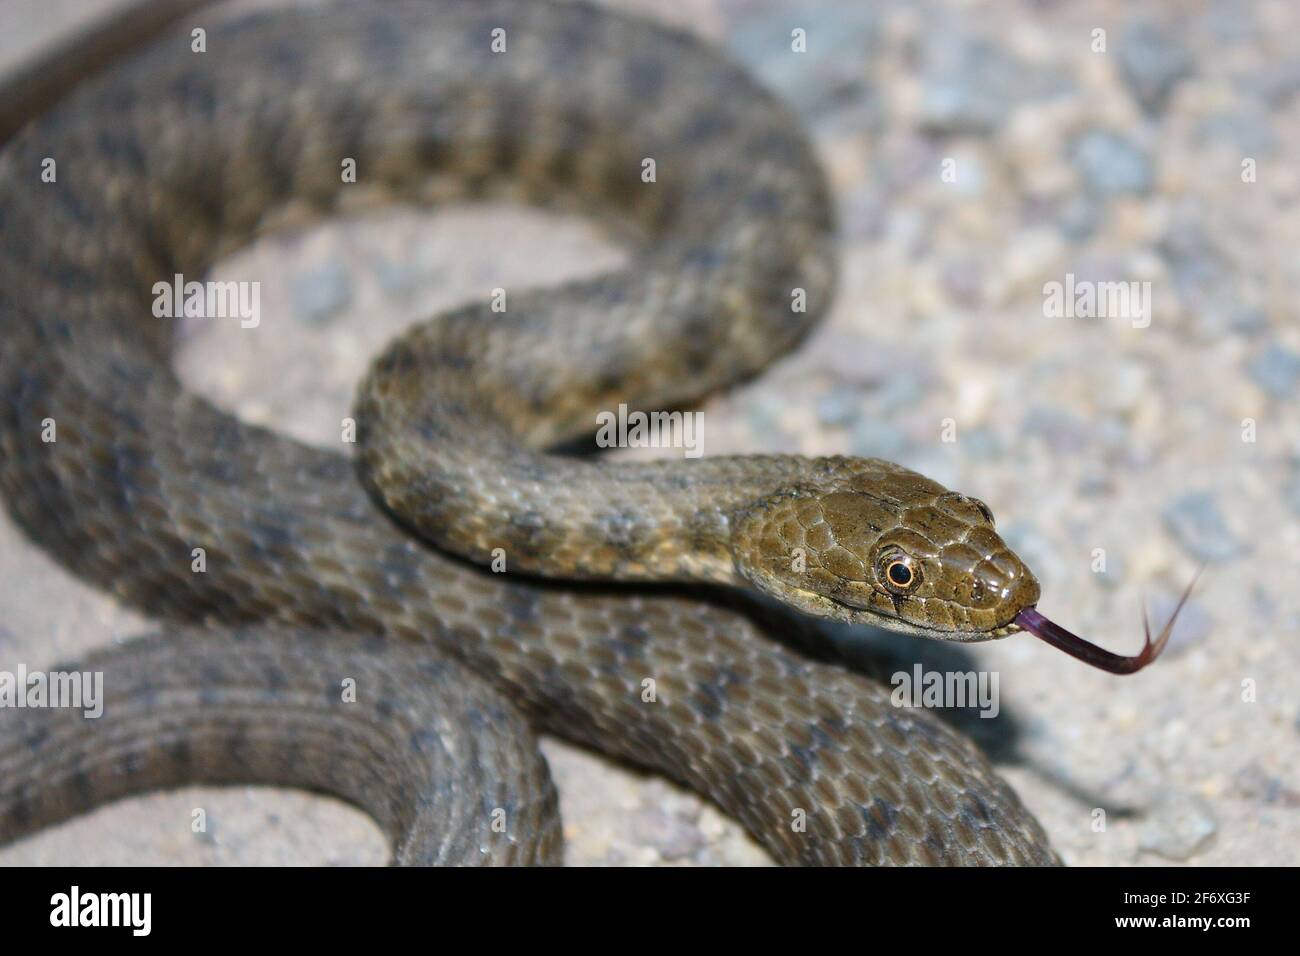 Dés serpent (Natrix tessellata) avec la langue dehors Banque D'Images